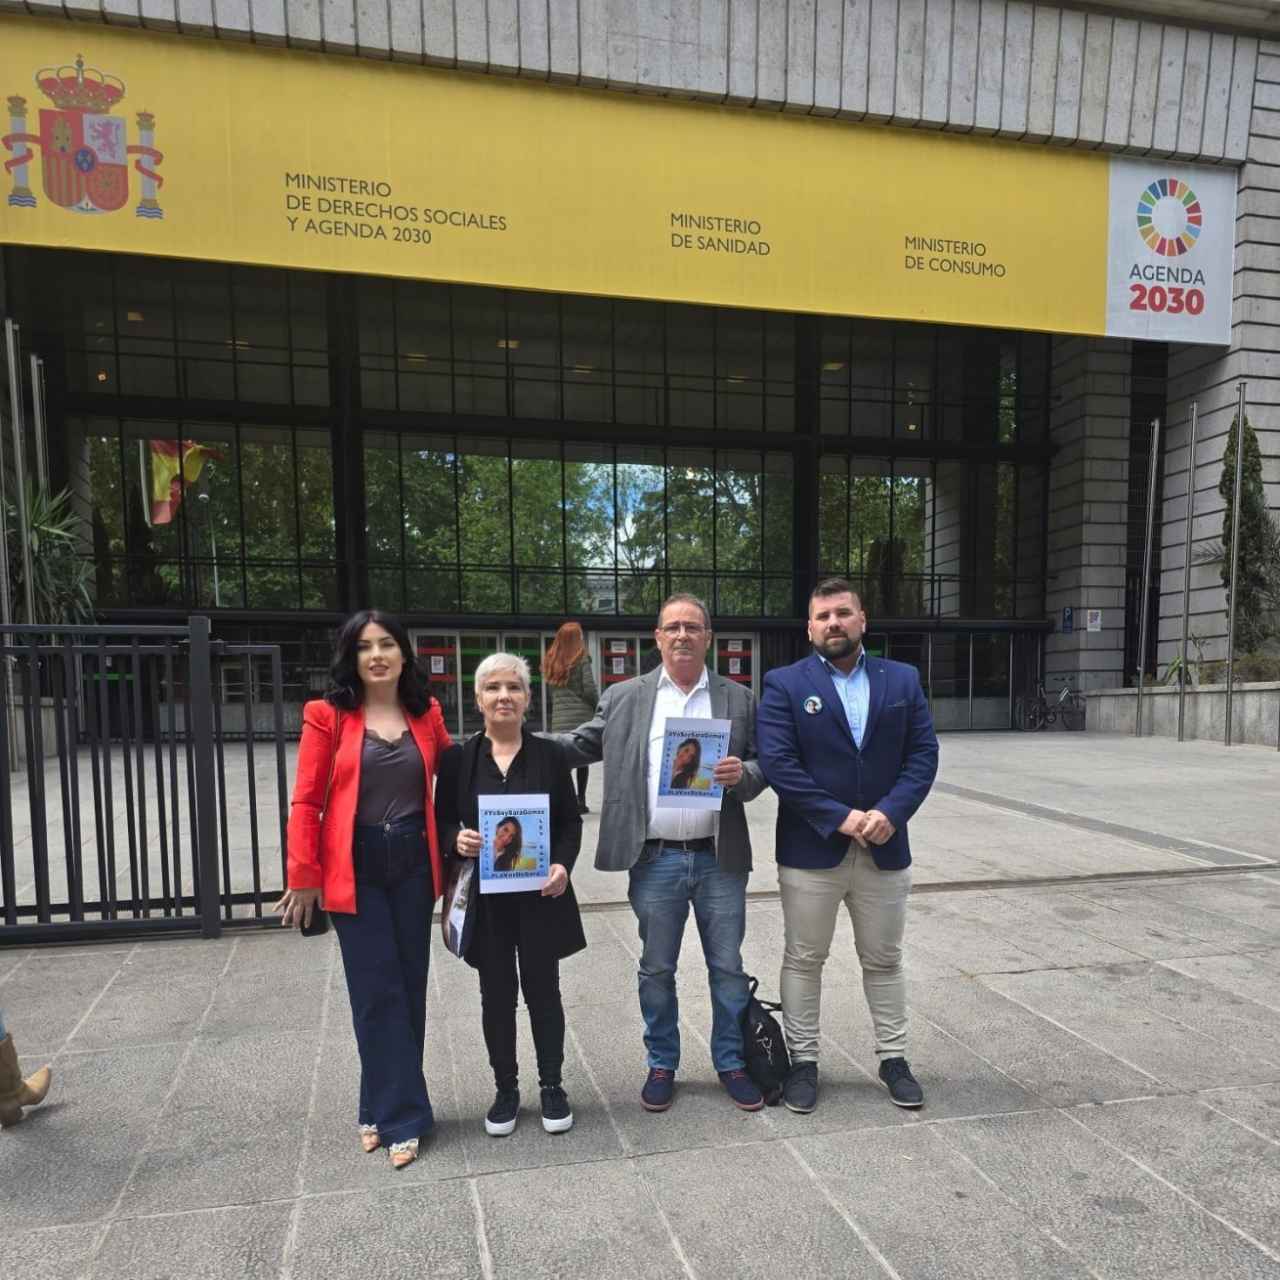 Nora, Felisa, Damián y Rubén, en la puerta del Ministerio de Sanidad en Madrid.